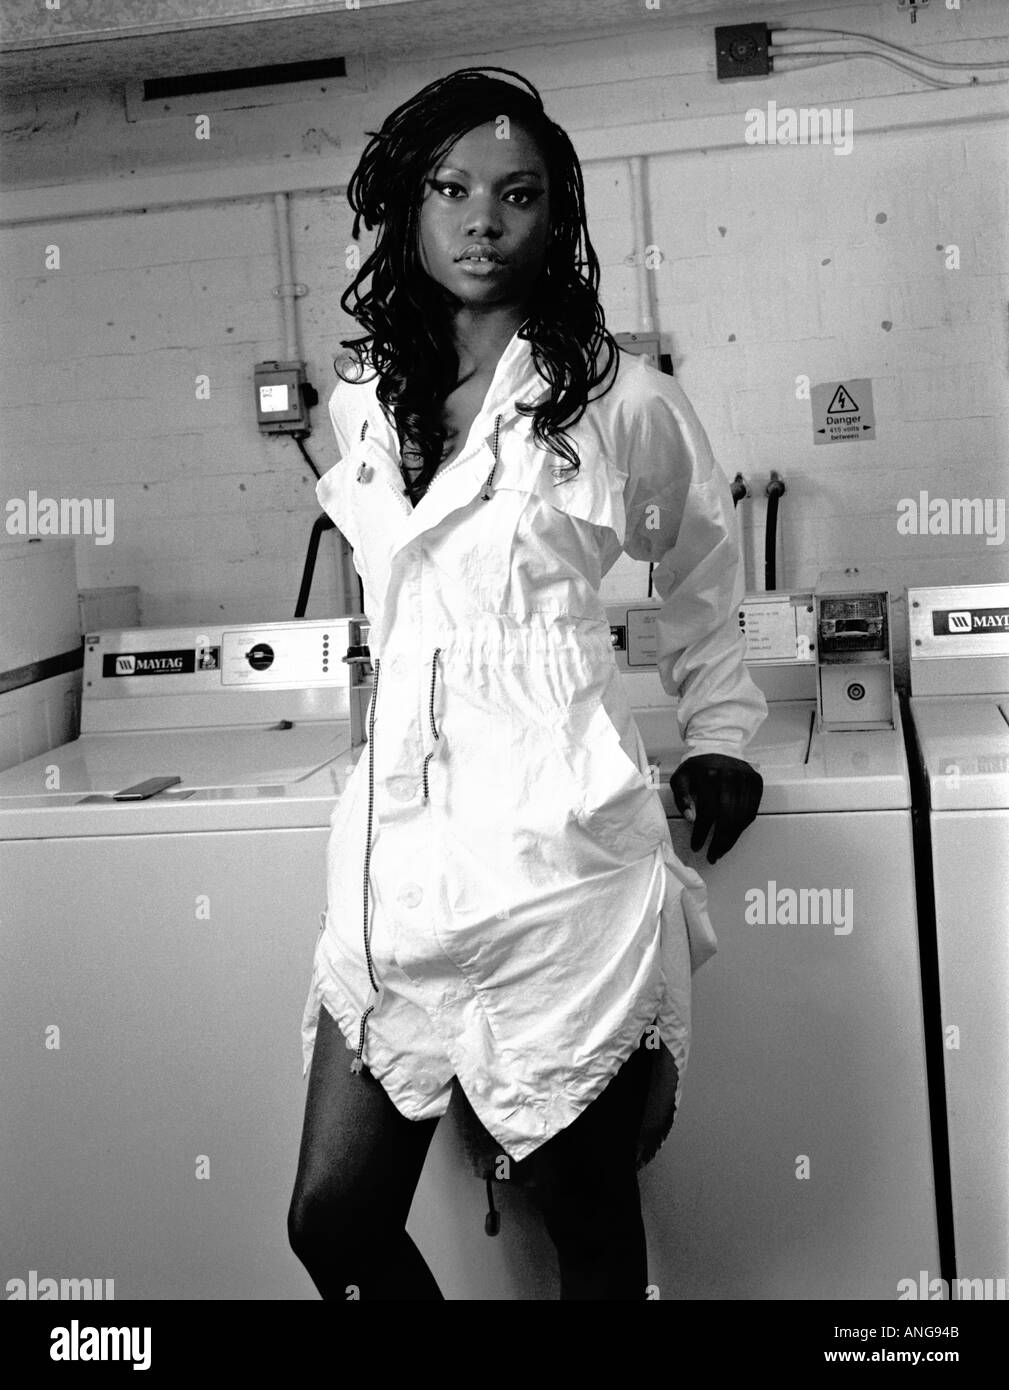 Vivienne Westwood showcase shoot April 2004 Stock Photo